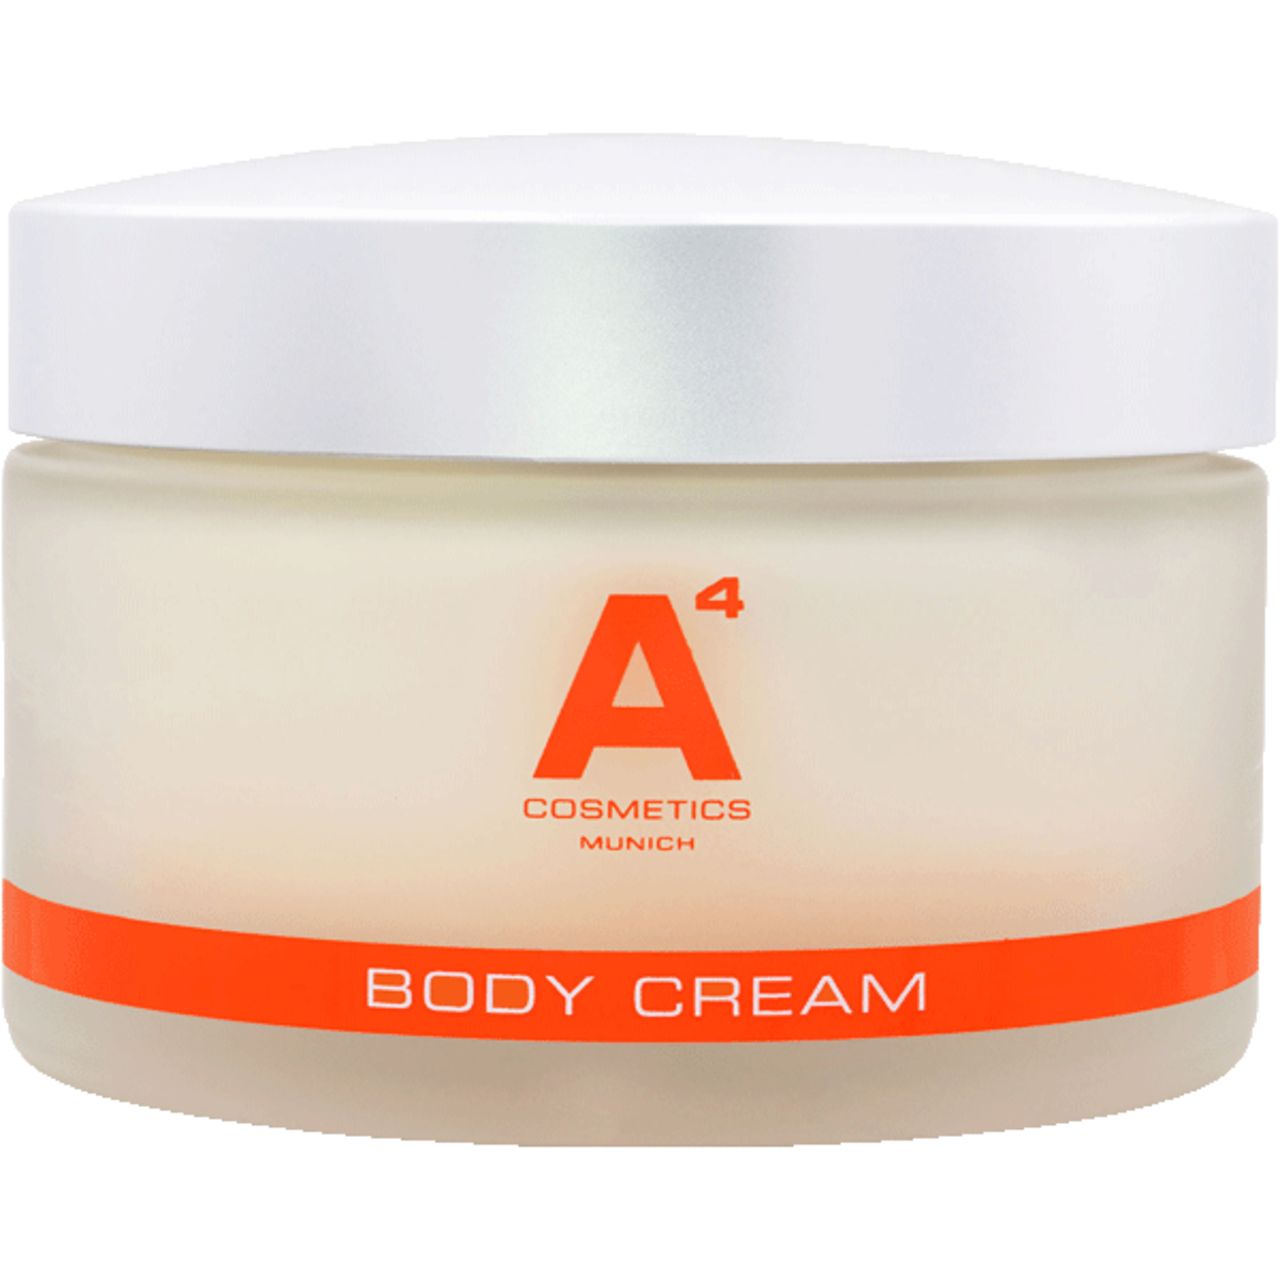 A4 Cosmetics, Body Cream